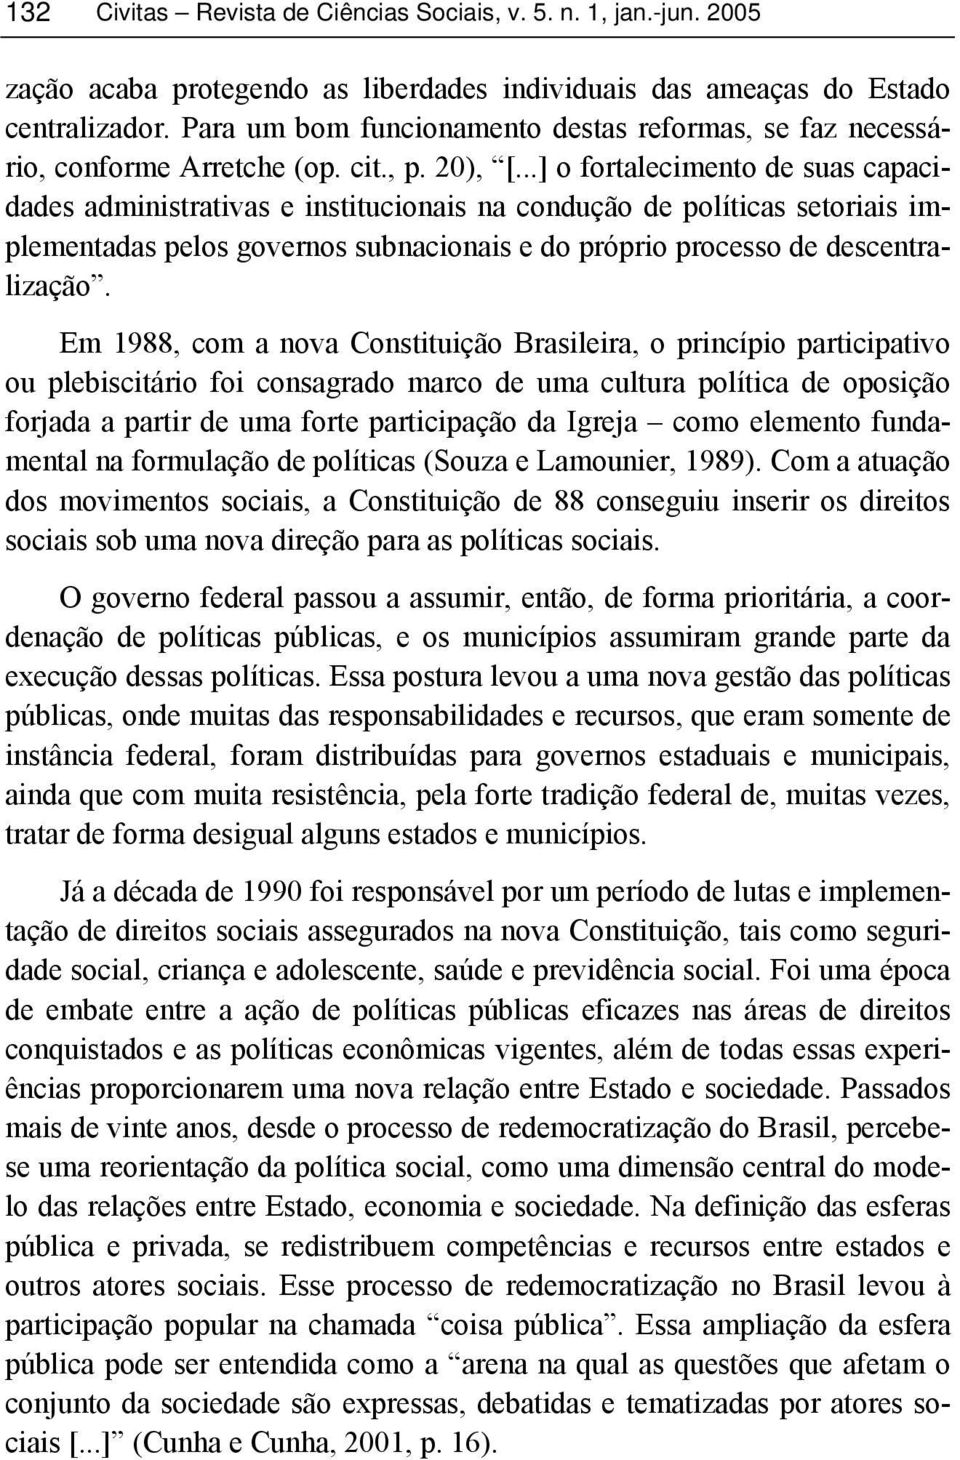 Em 1988, com a nova Constituição Brasileira, o princípio participativo ou plebiscitário foi consagrado marco de uma cultura política de oposição forjada a partir de uma forte participação da Igreja